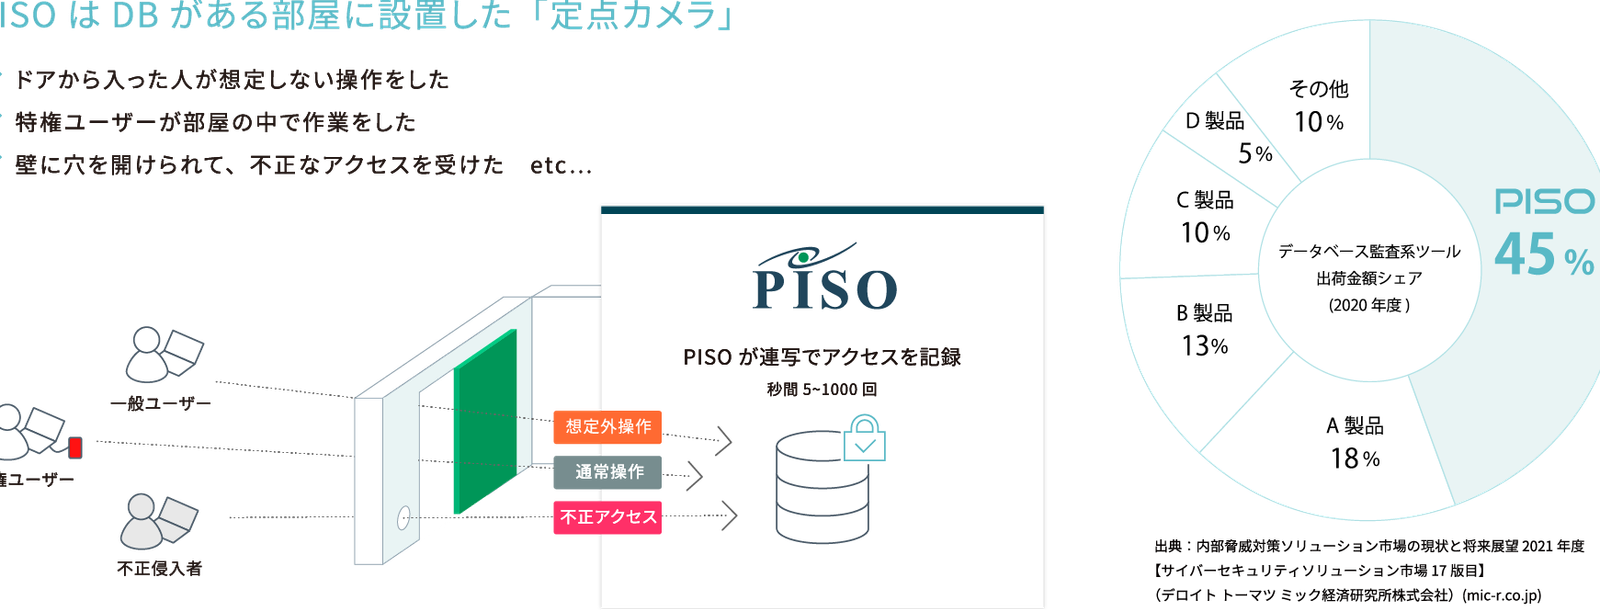 PISO 詳細 | インサイトテクノロジー